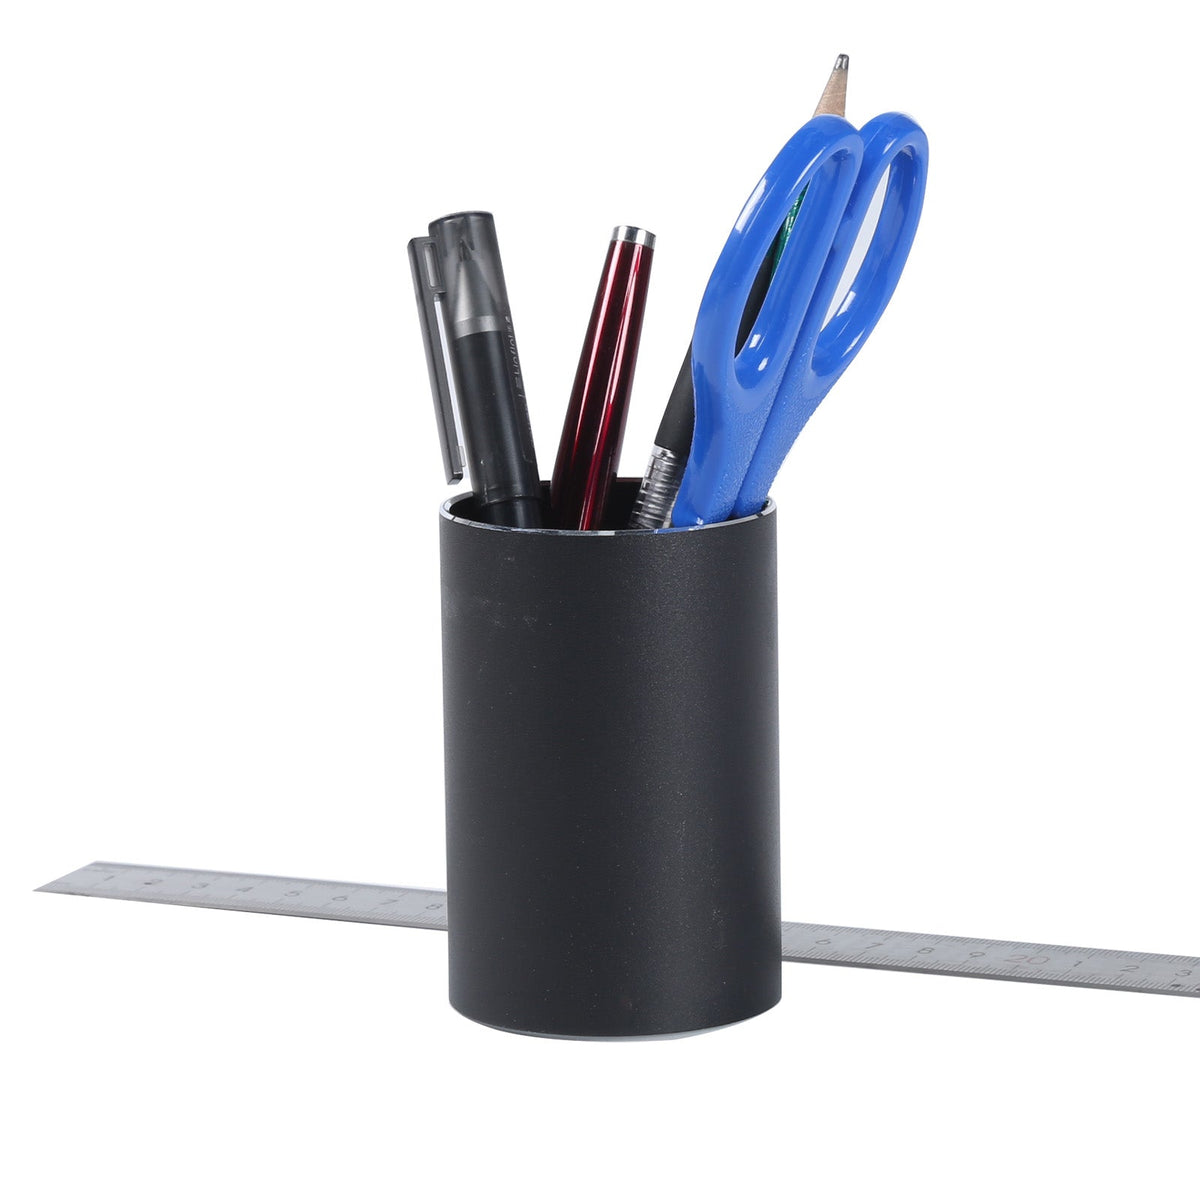 Porte-stylo rond en alliage d'aluminium, organisateur de rangement de maquillage de bureau pour la maison, le bureau et l'école